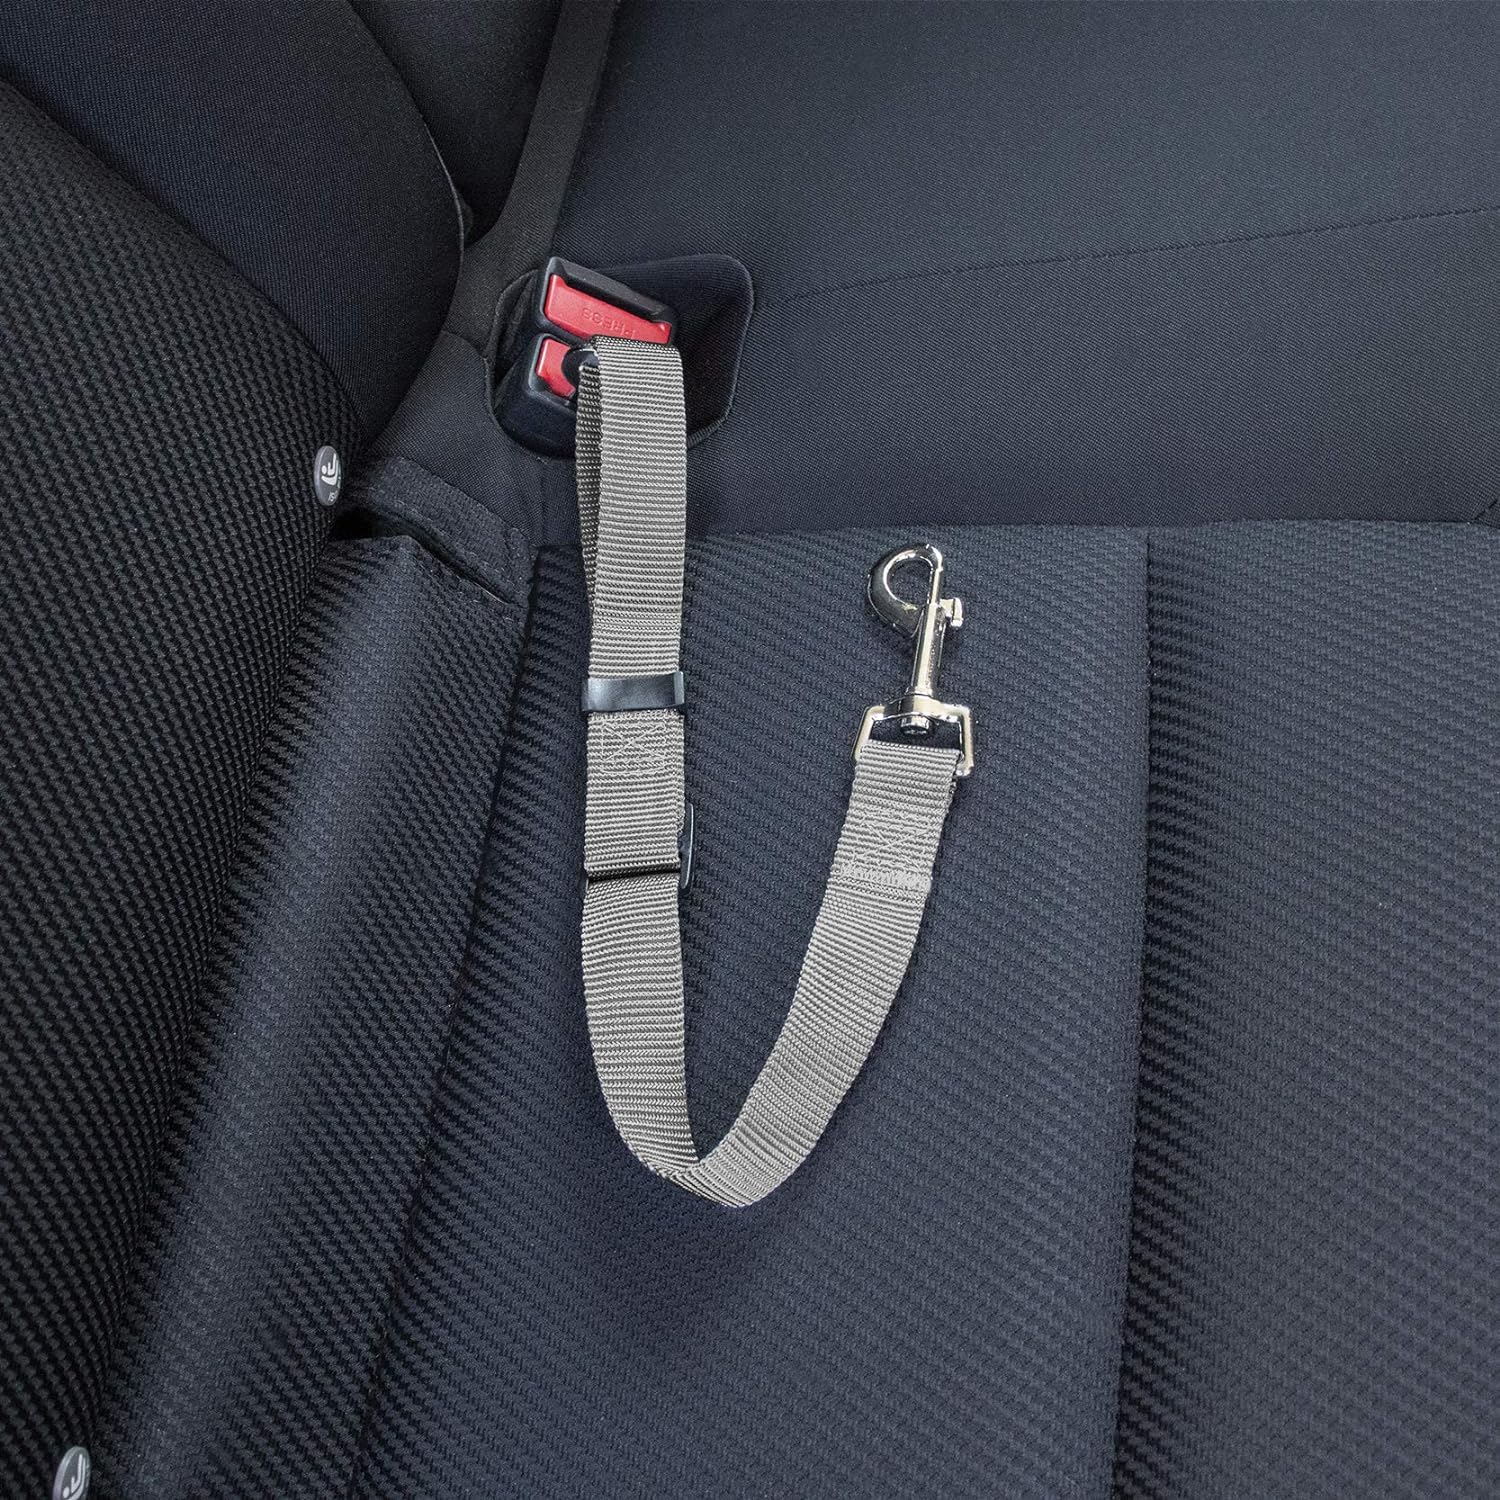 Cinturón de seguridad ajustable para mascotas para automóviles y vehículos